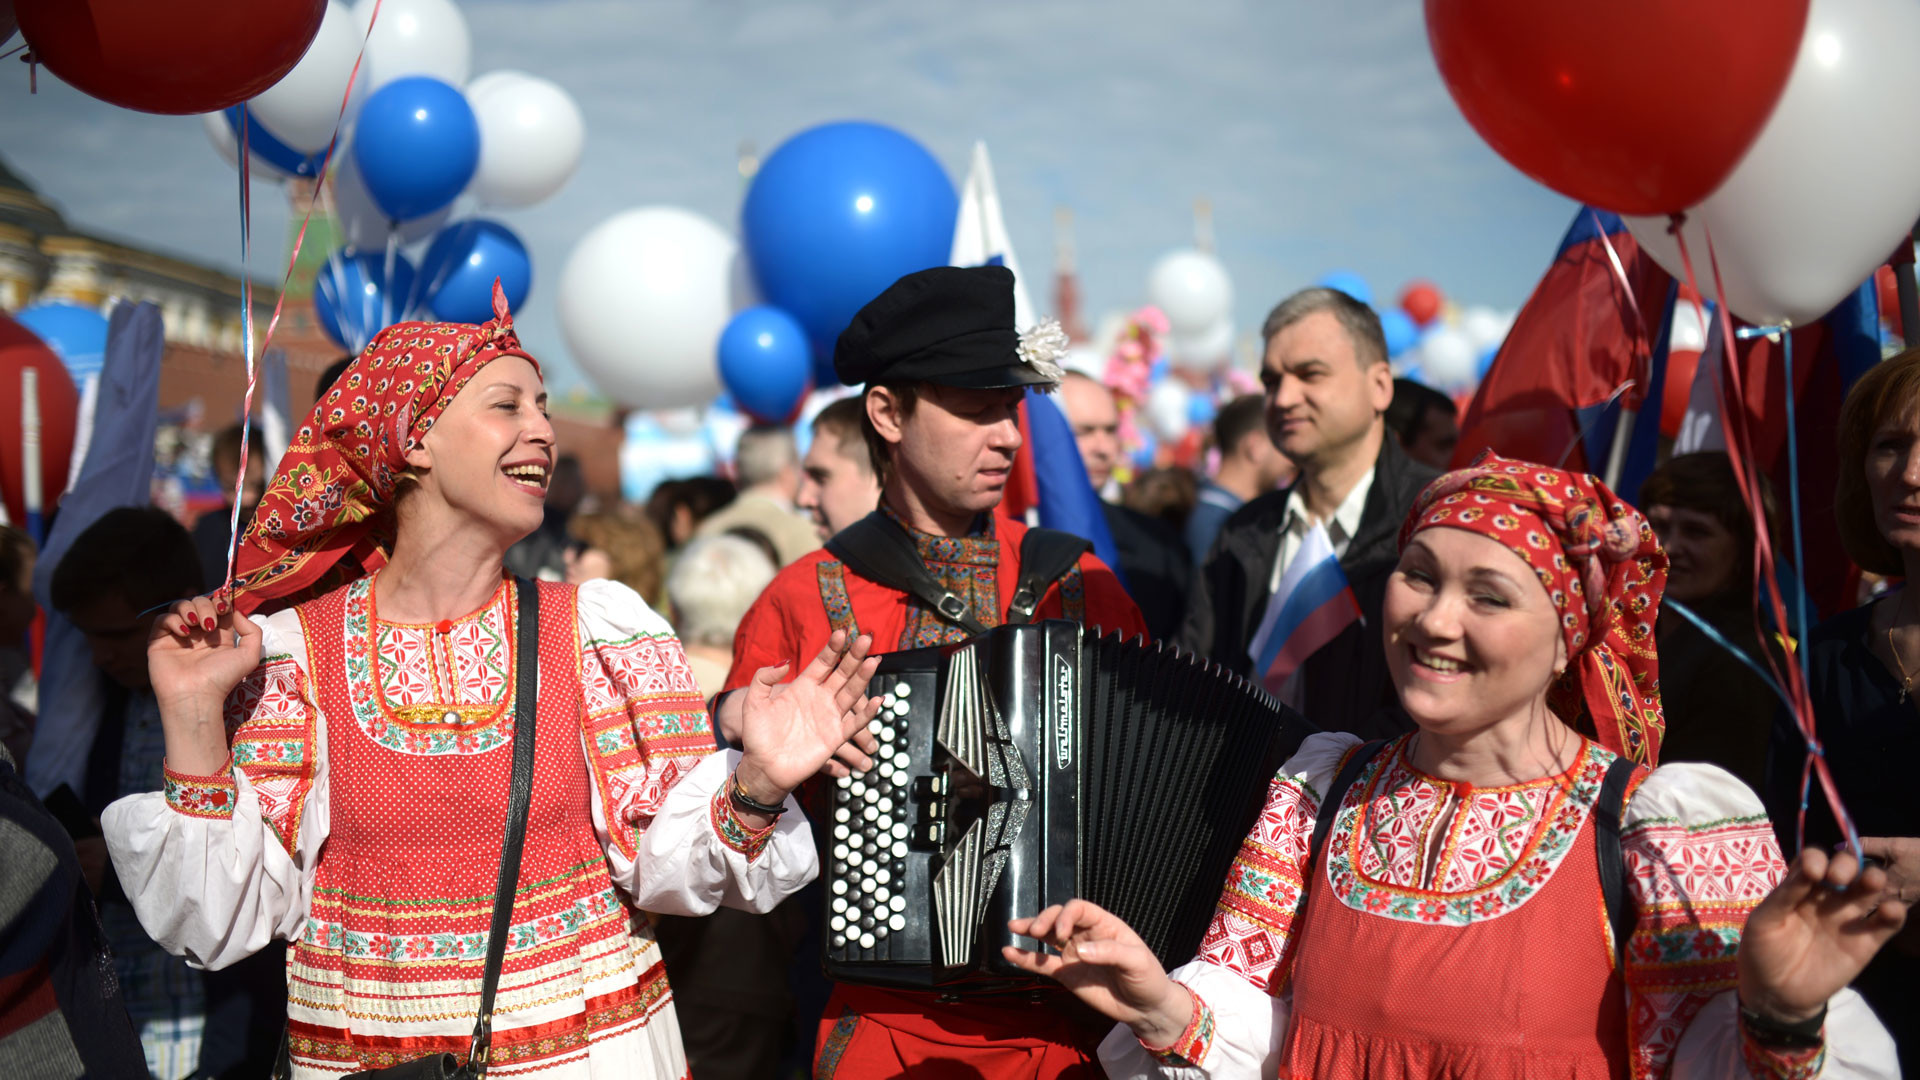 12 мая в народе. Первомай в России. Первое празднование 1 мая в России. Народные гуляние в мае. Первомай в современной России.